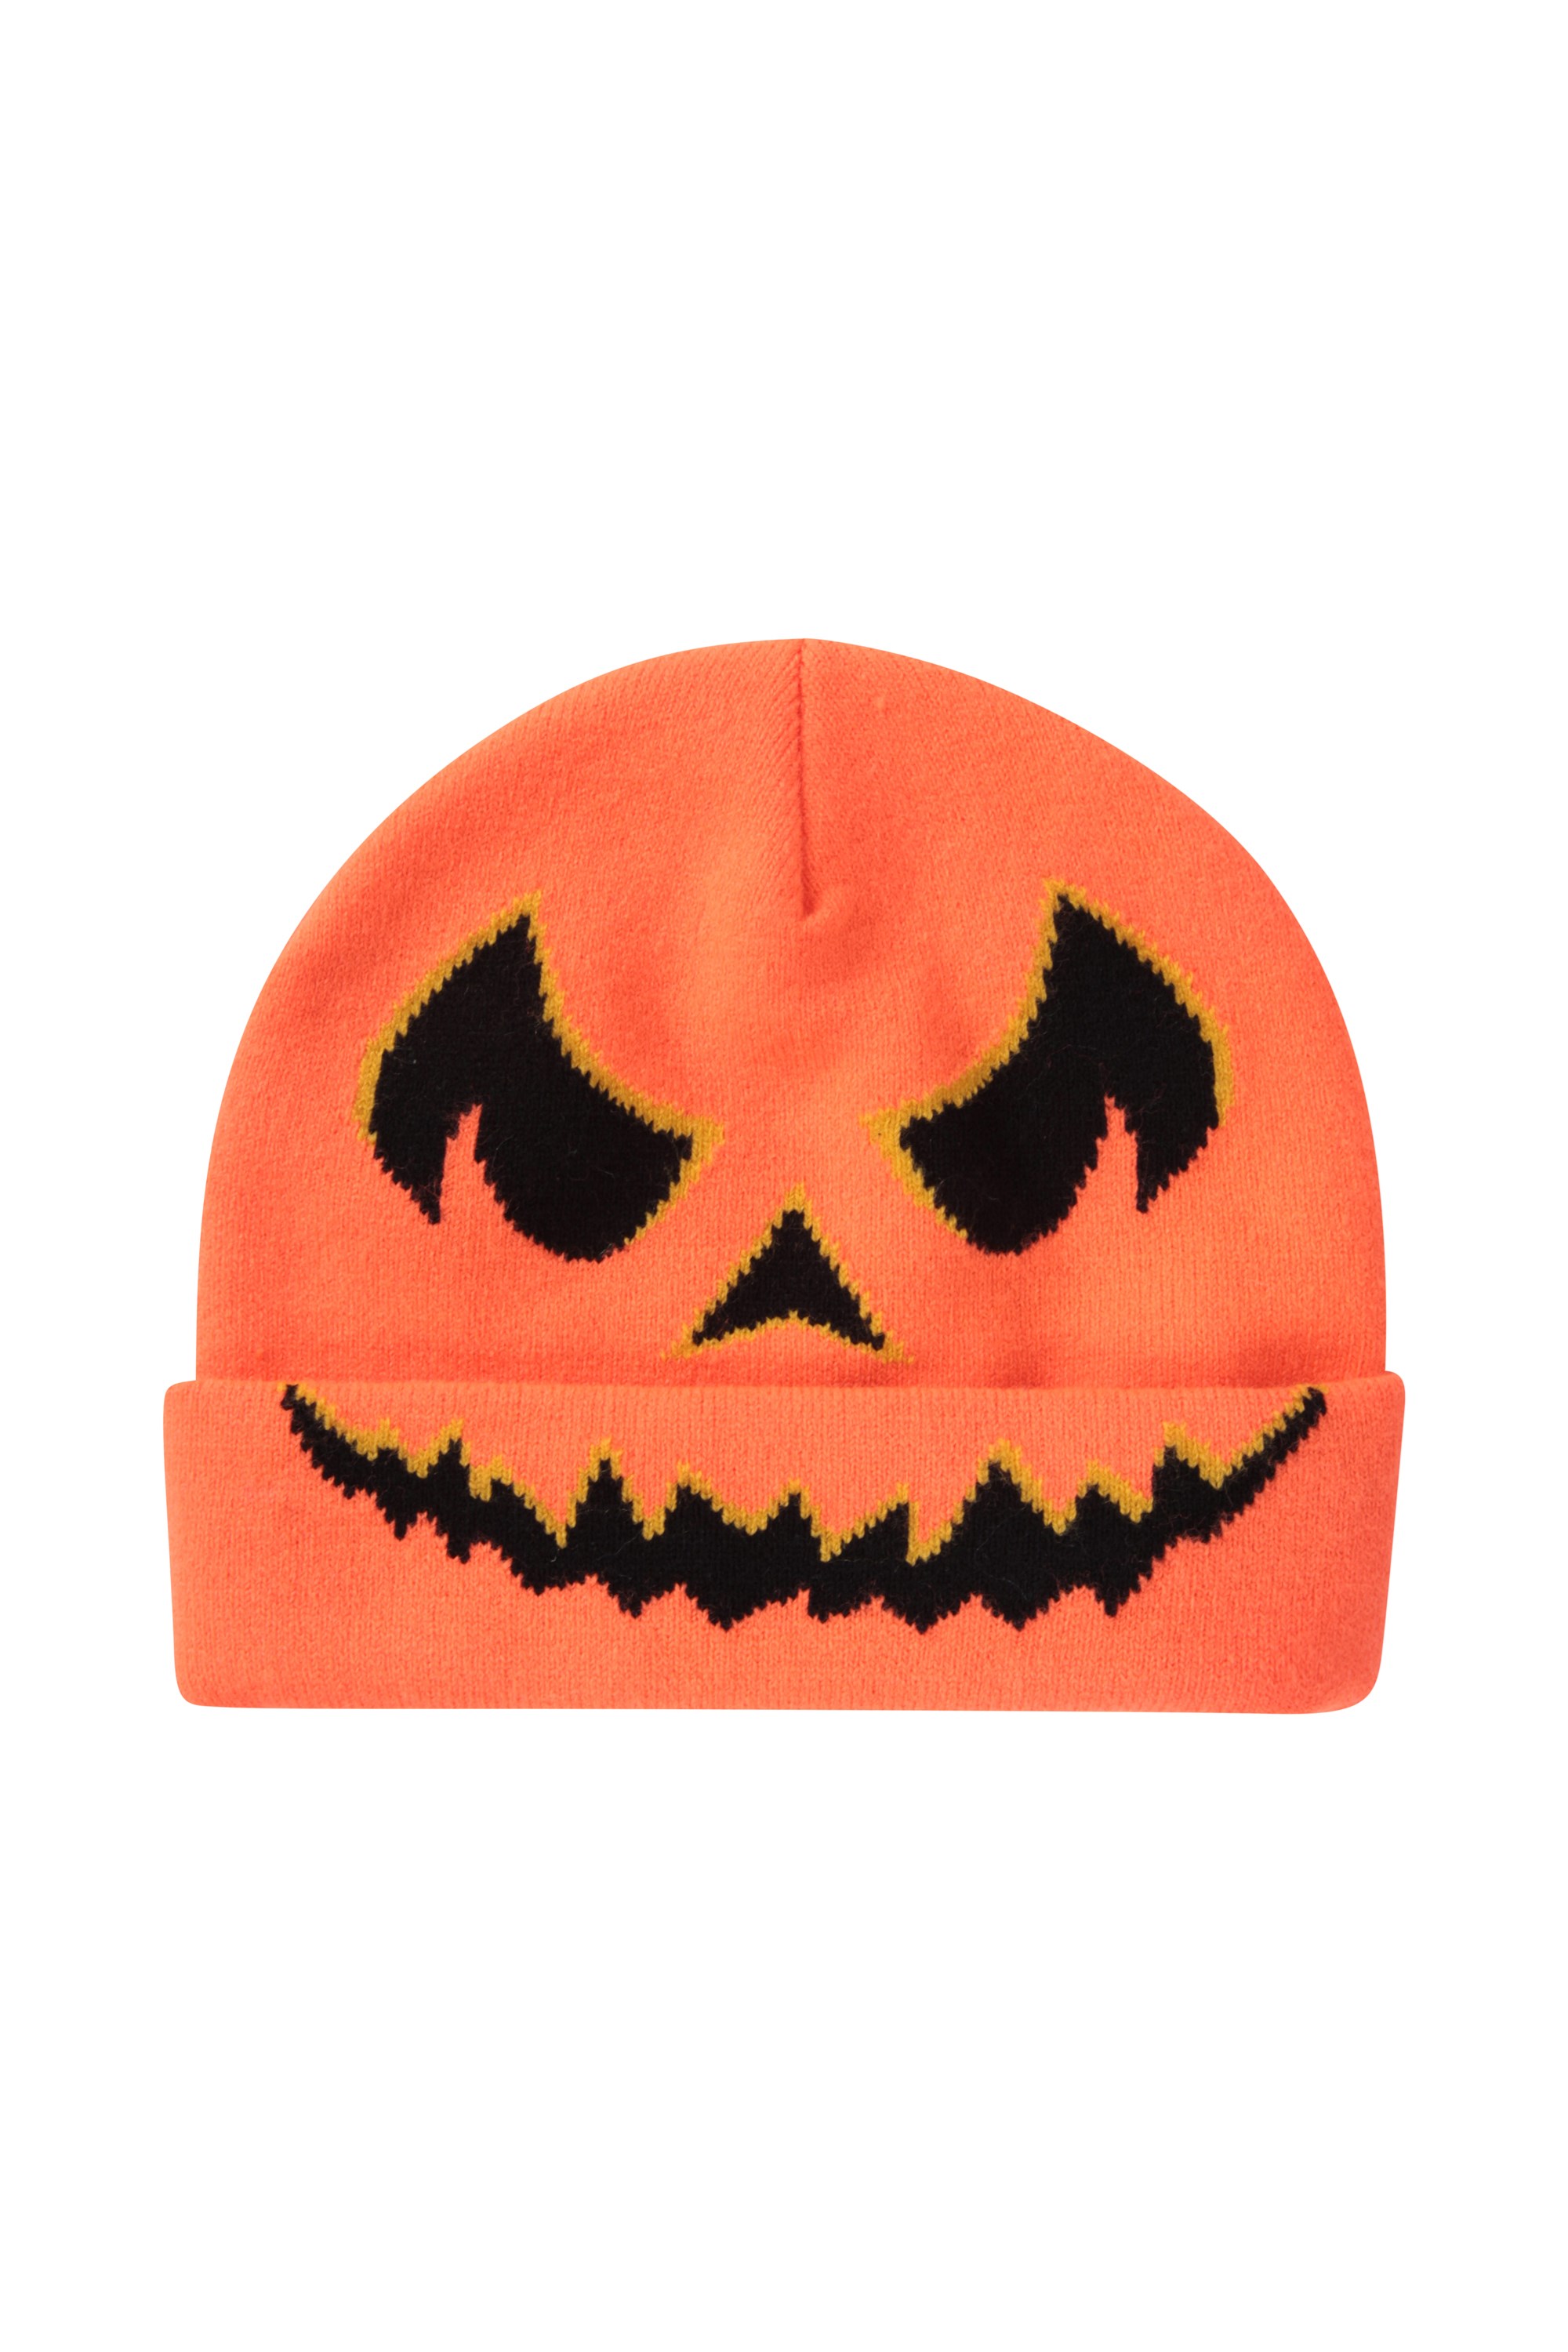 Halloween Knitted Kids Beanie - Orange